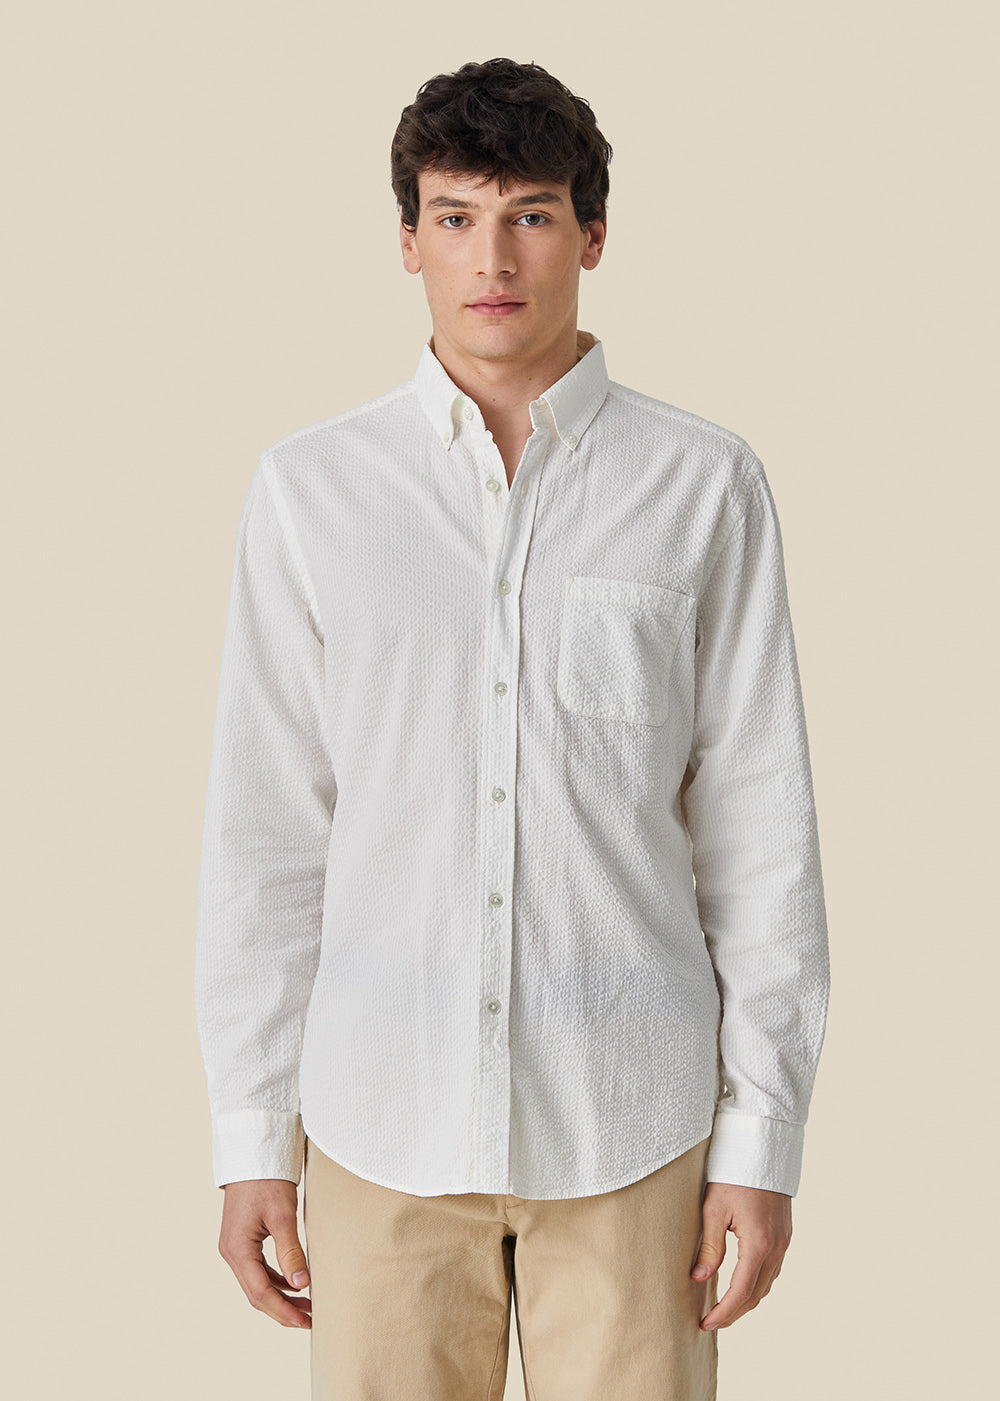 Atlantico Shirt - White - Portuguese Flannel Canada - Danali